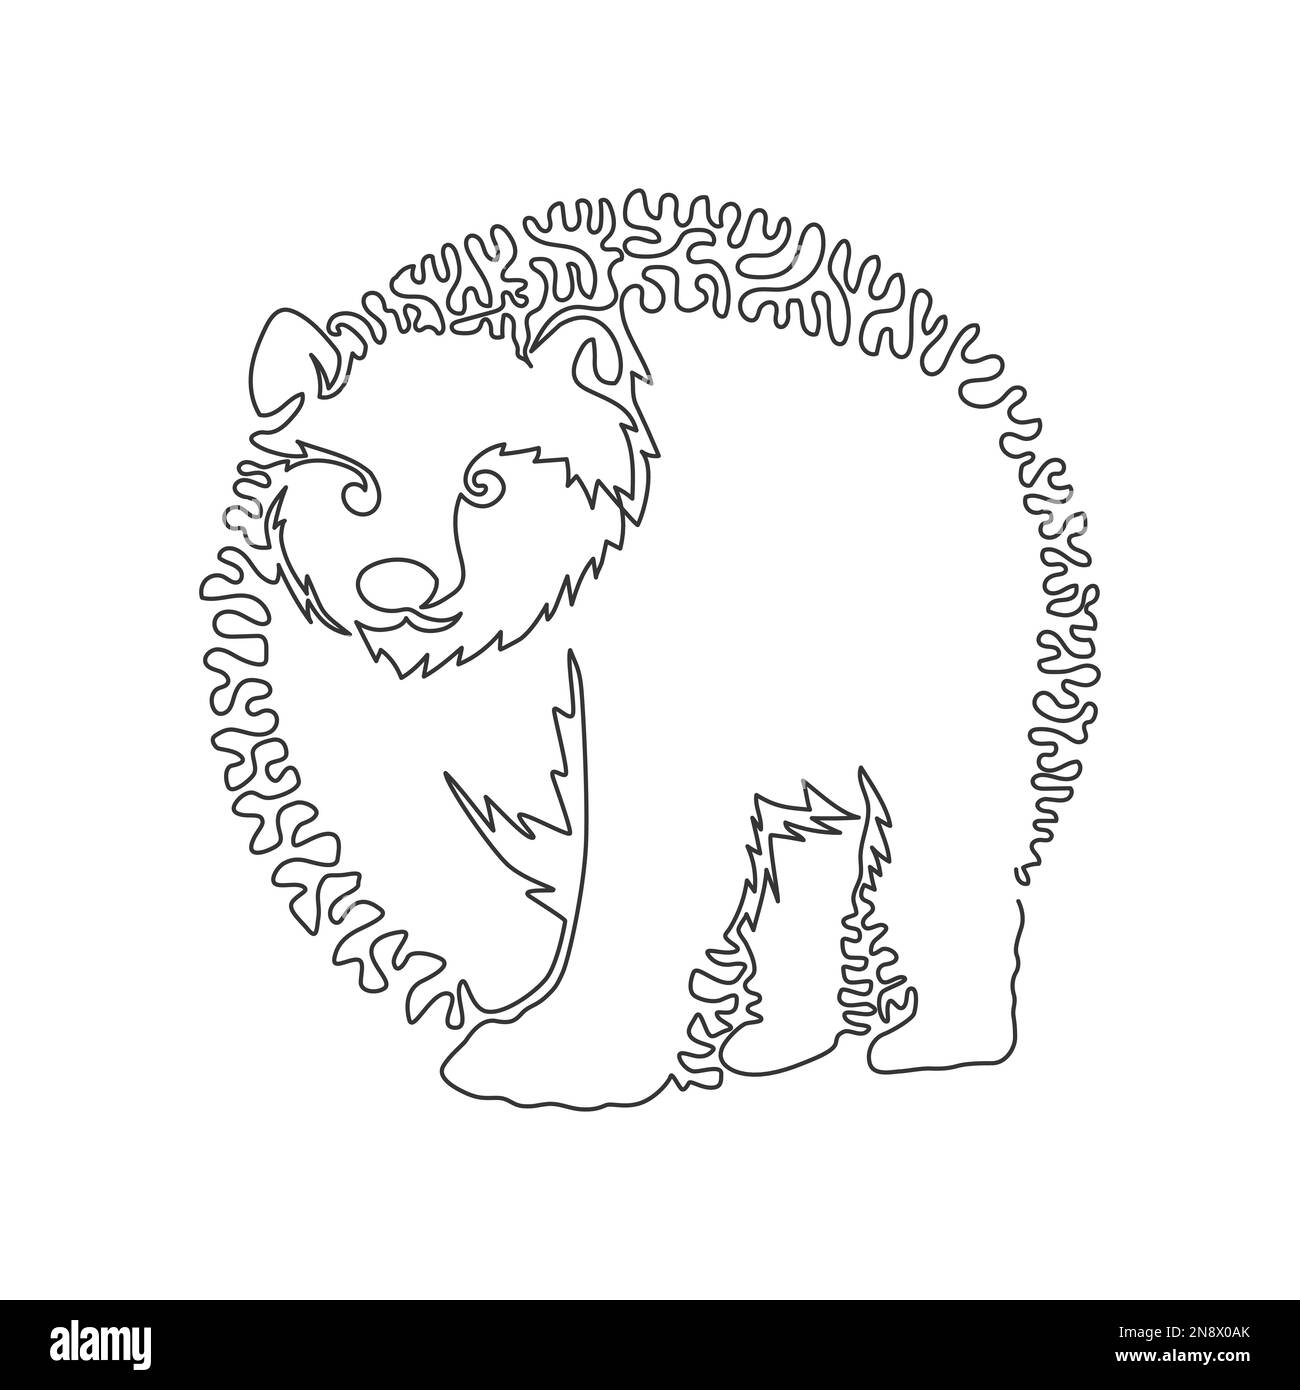 Eine einzelne geschwungene, eine Linie von einem mächtigen wandelnden Bären. Durchgehende Strichzeichnung grafischer Designvektor Darstellung eines wilden Bären für ico Stock Vektor